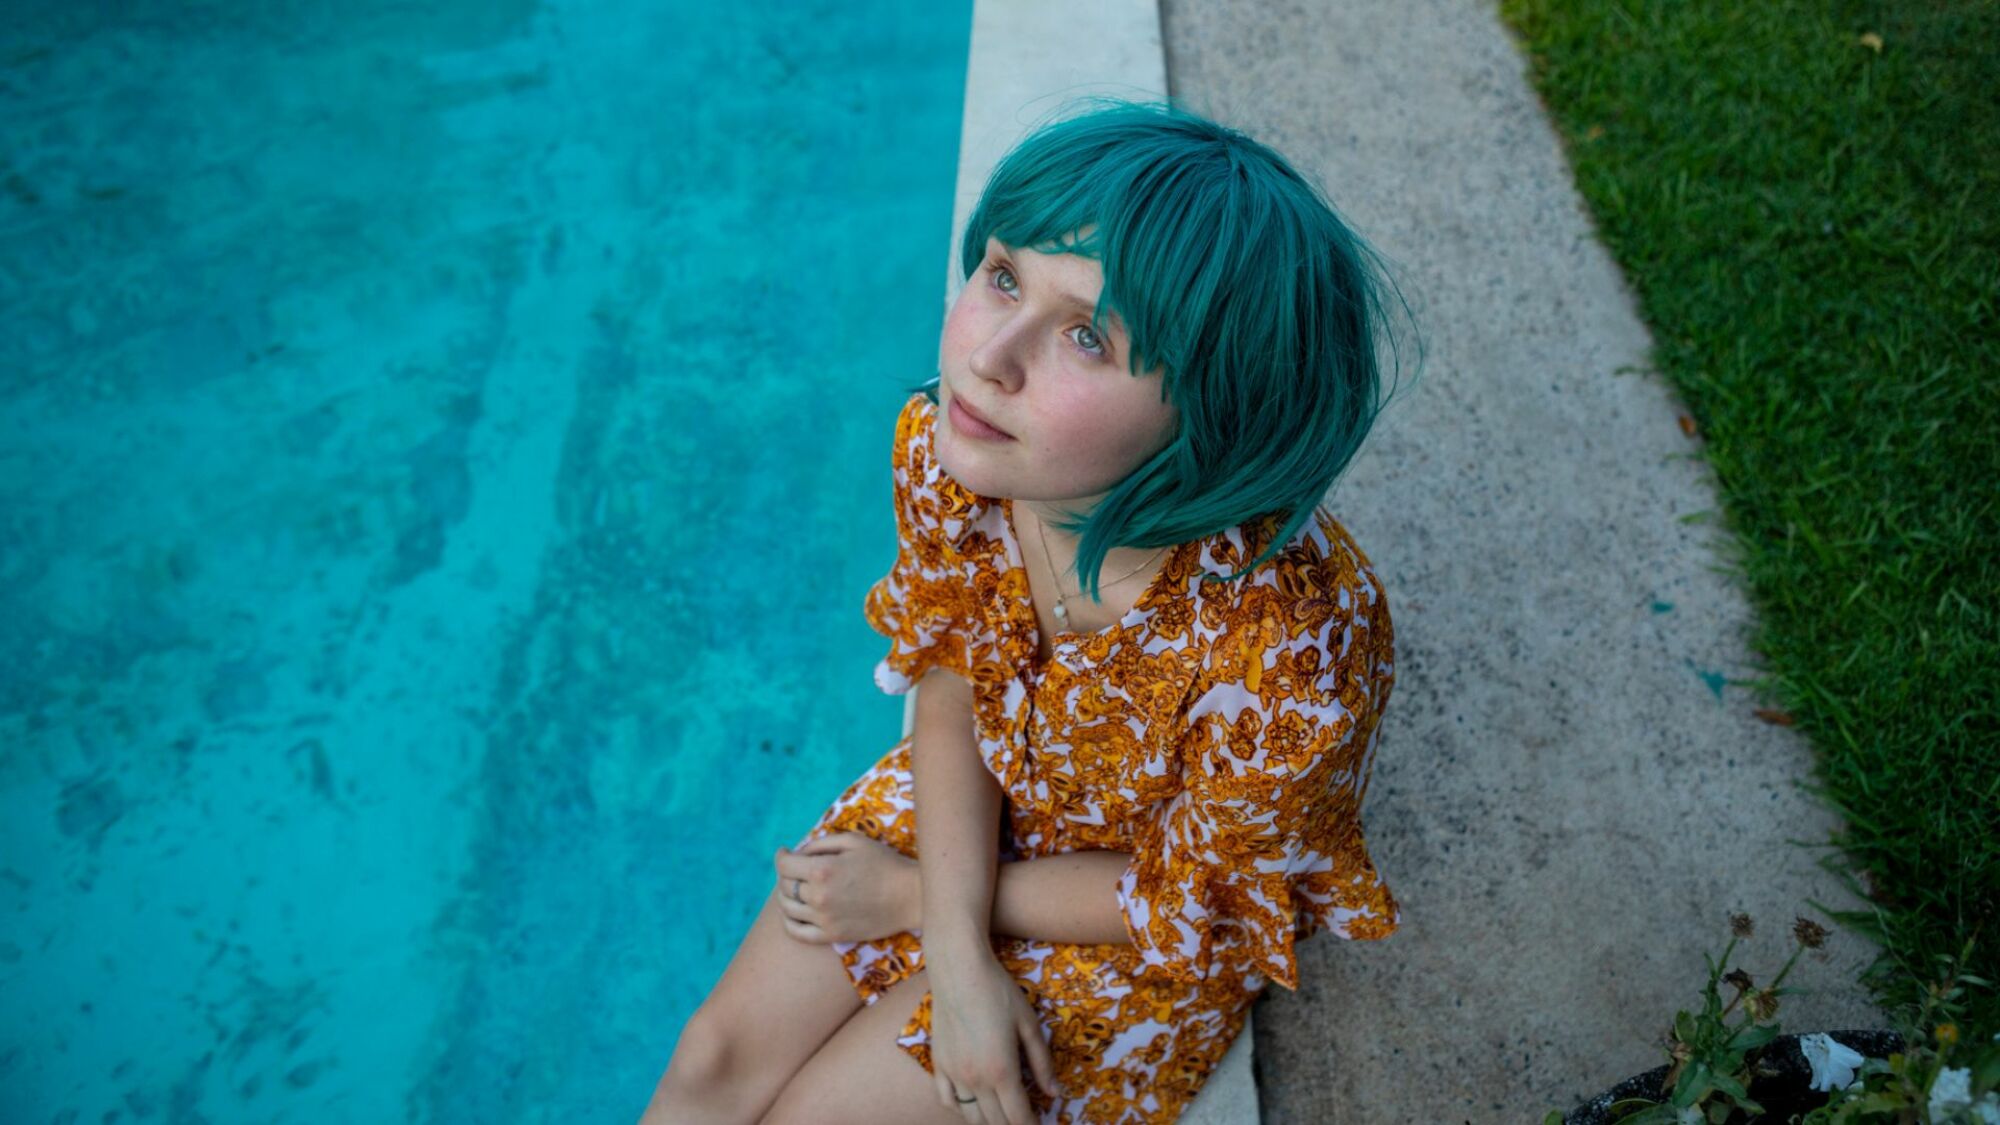 Une fille avec une perruque bleue est assise près d'une piscine.